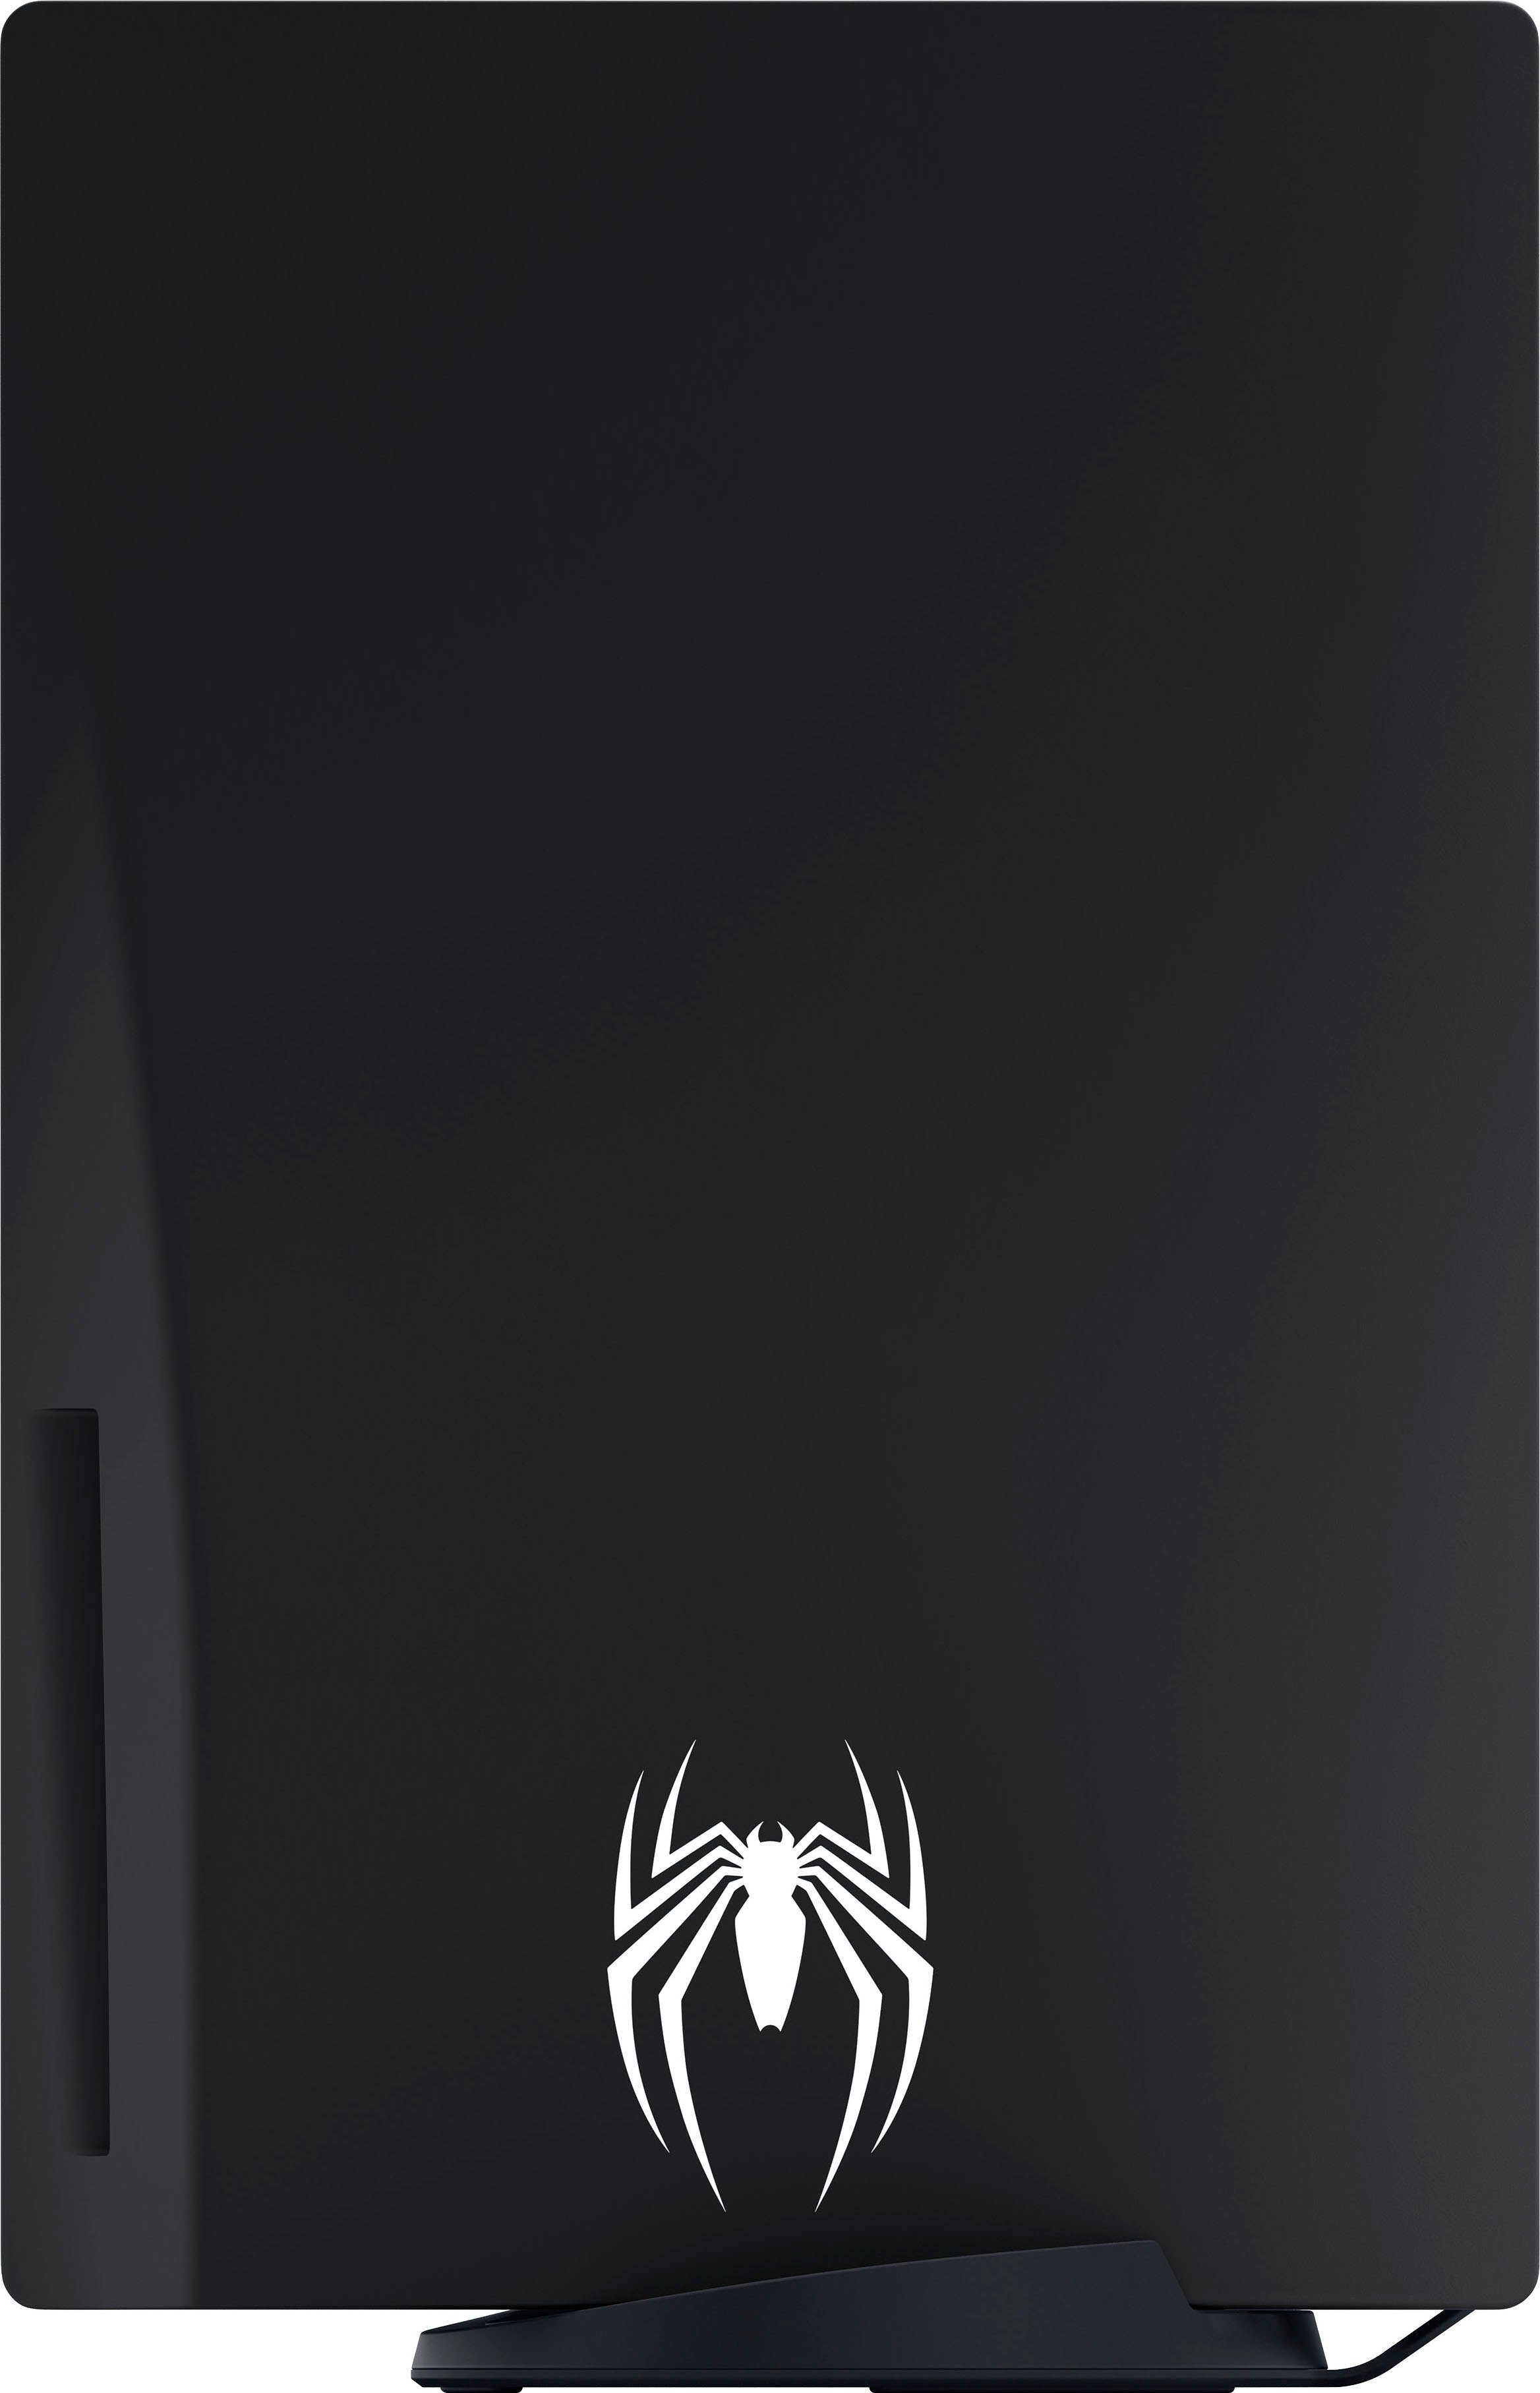 MARVEL’S 5, Edition-Bundle PlayStation Limited 2 SPIDER-MAN